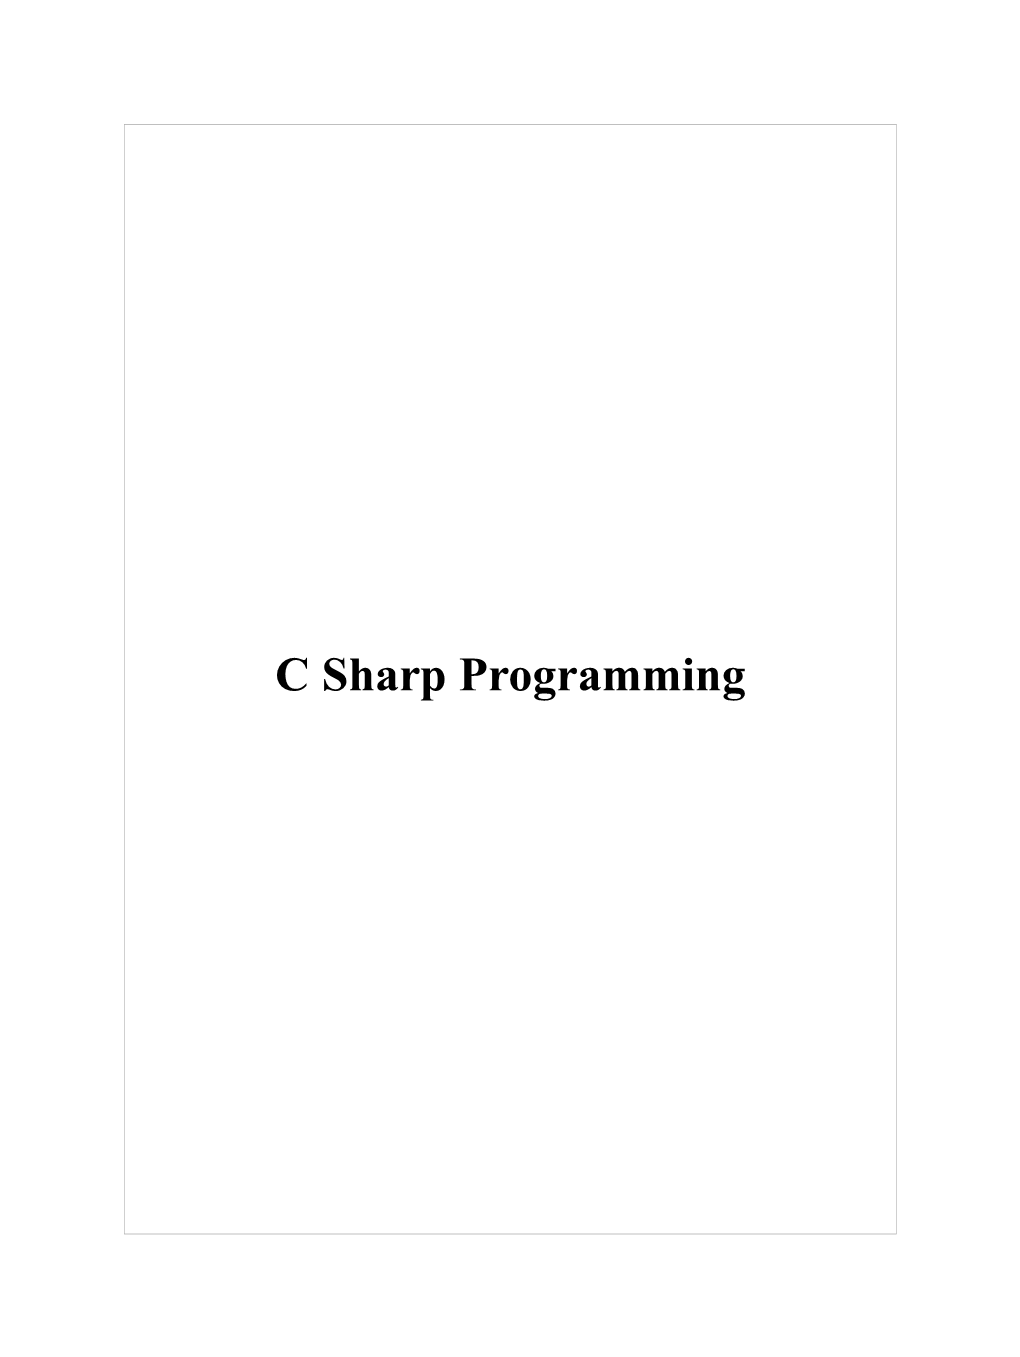 C Sharp Programming C Sharp Programming